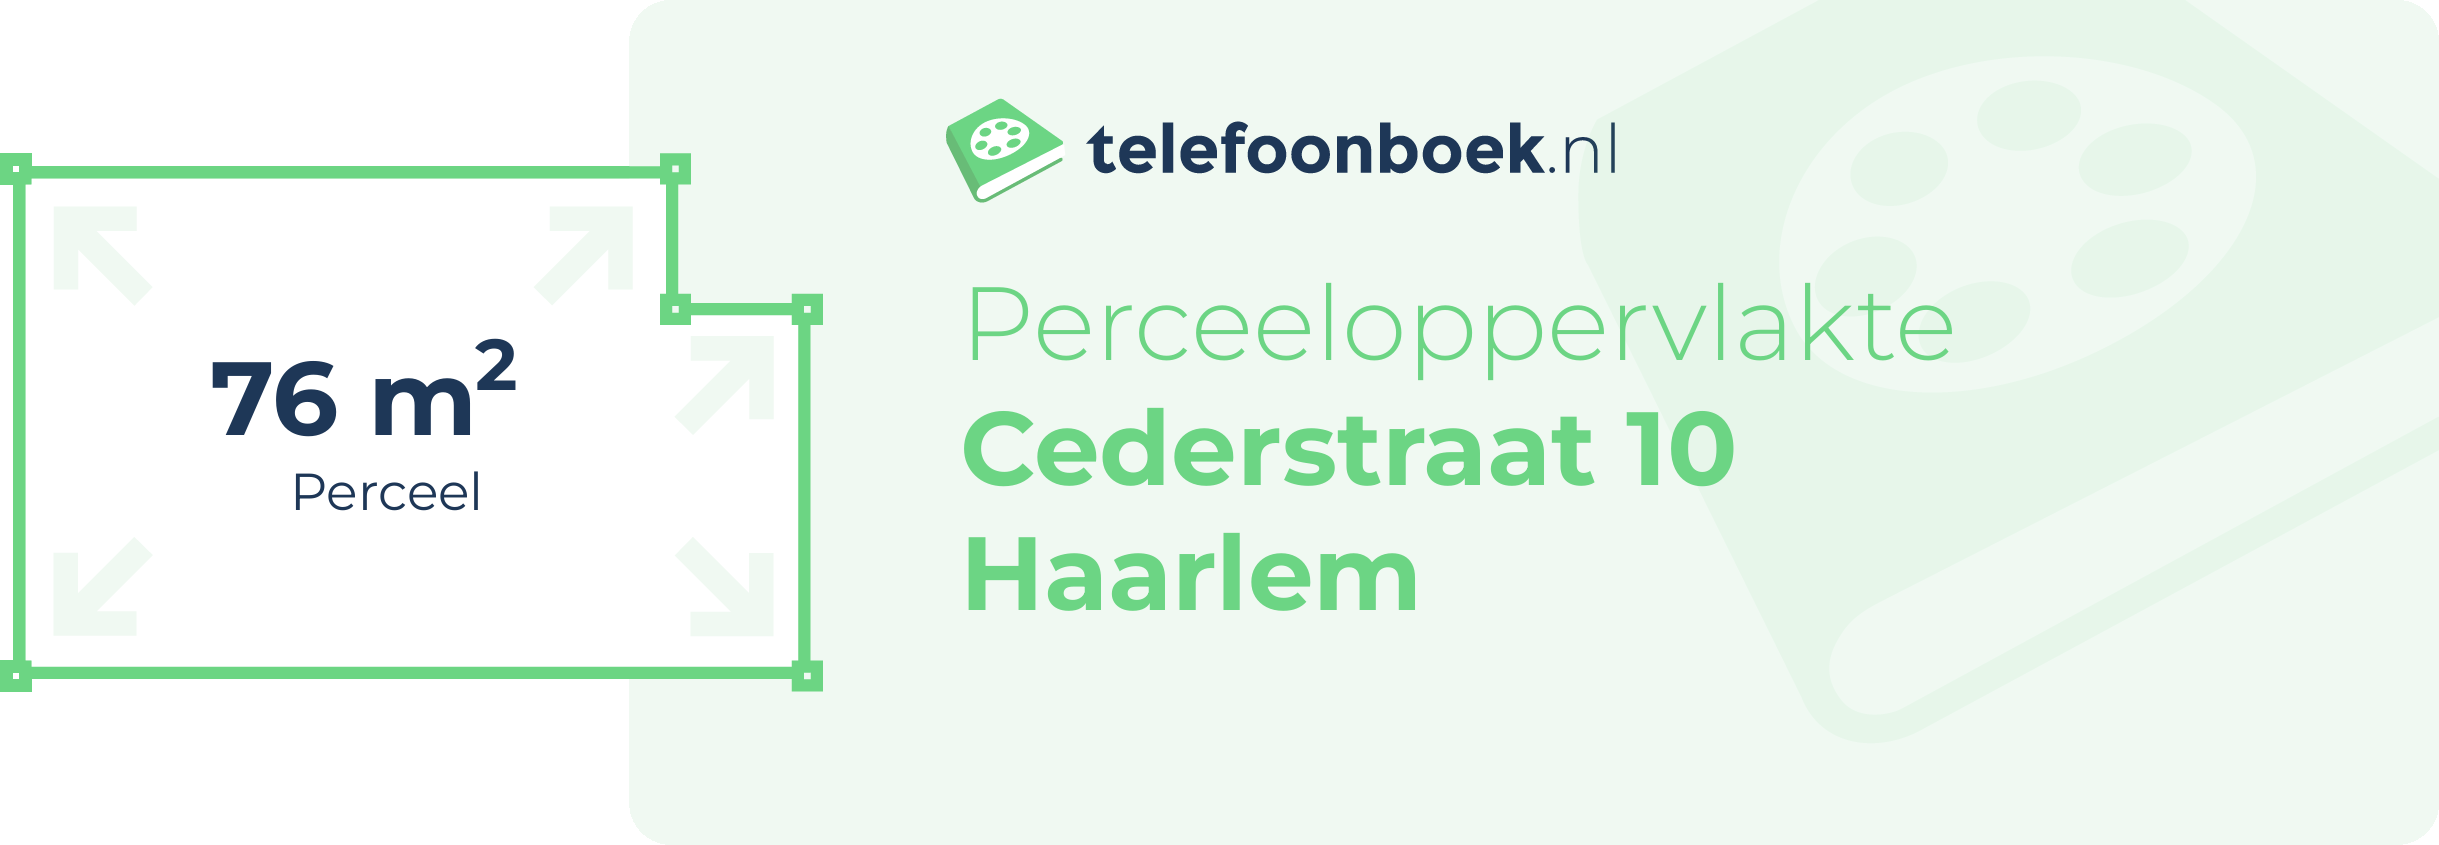 Perceeloppervlakte Cederstraat 10 Haarlem